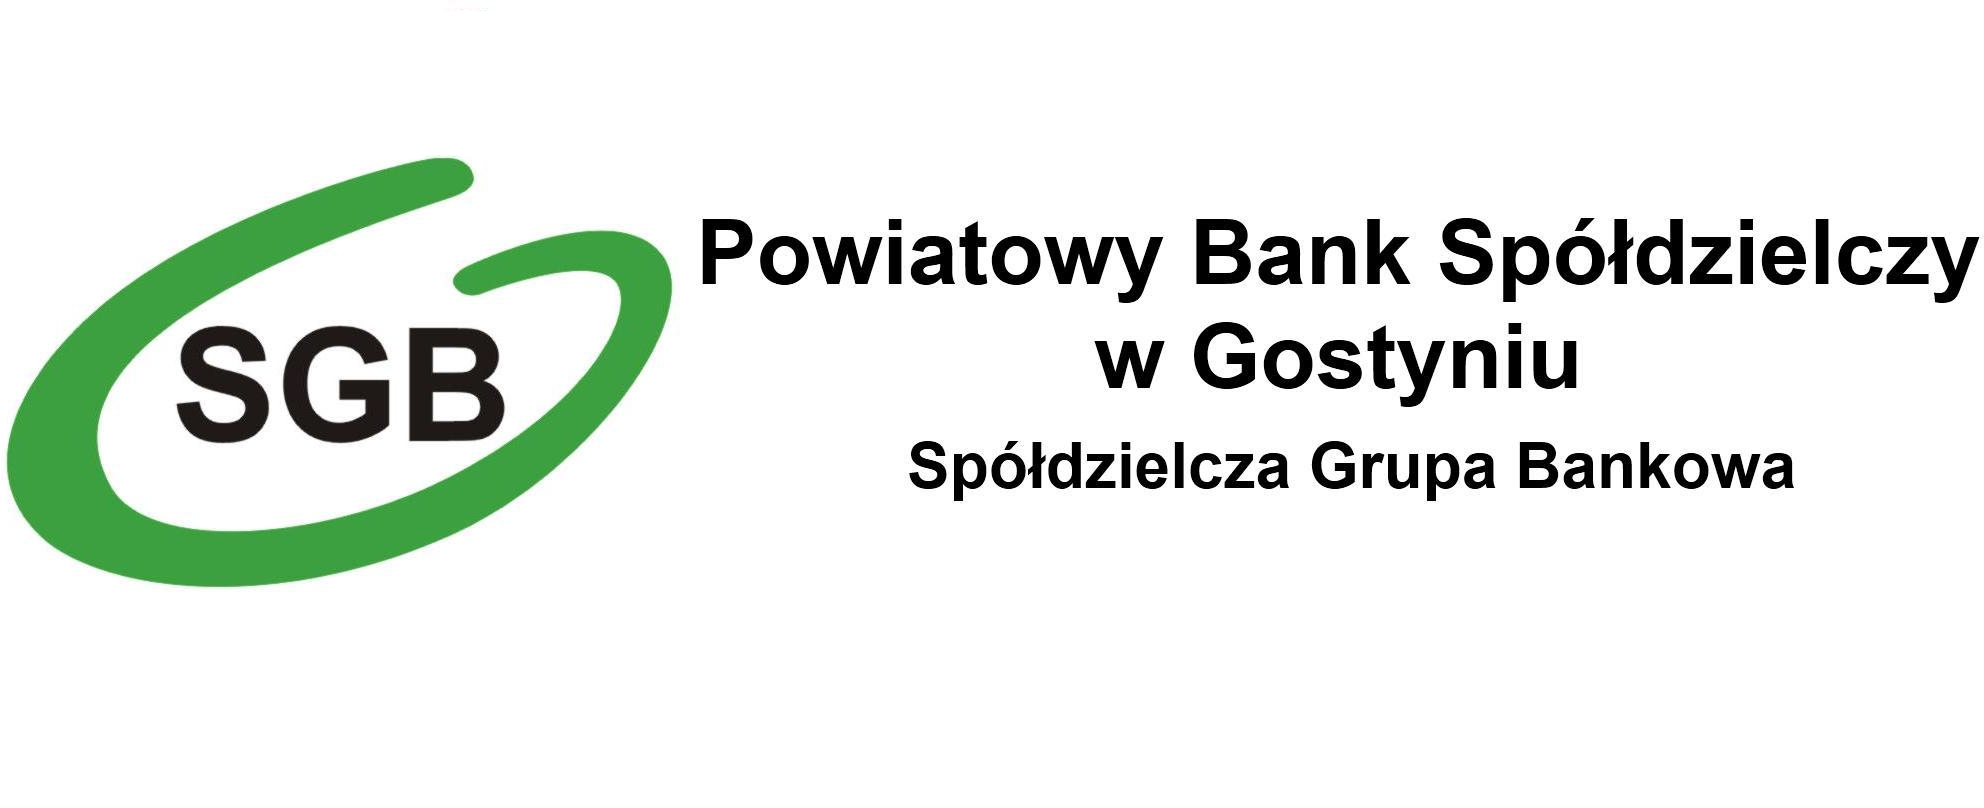 Przerwa w działaniu SGB Mobile 16.01.2022 - Powiatowy Bank Spółdzielczy w Gostyniu